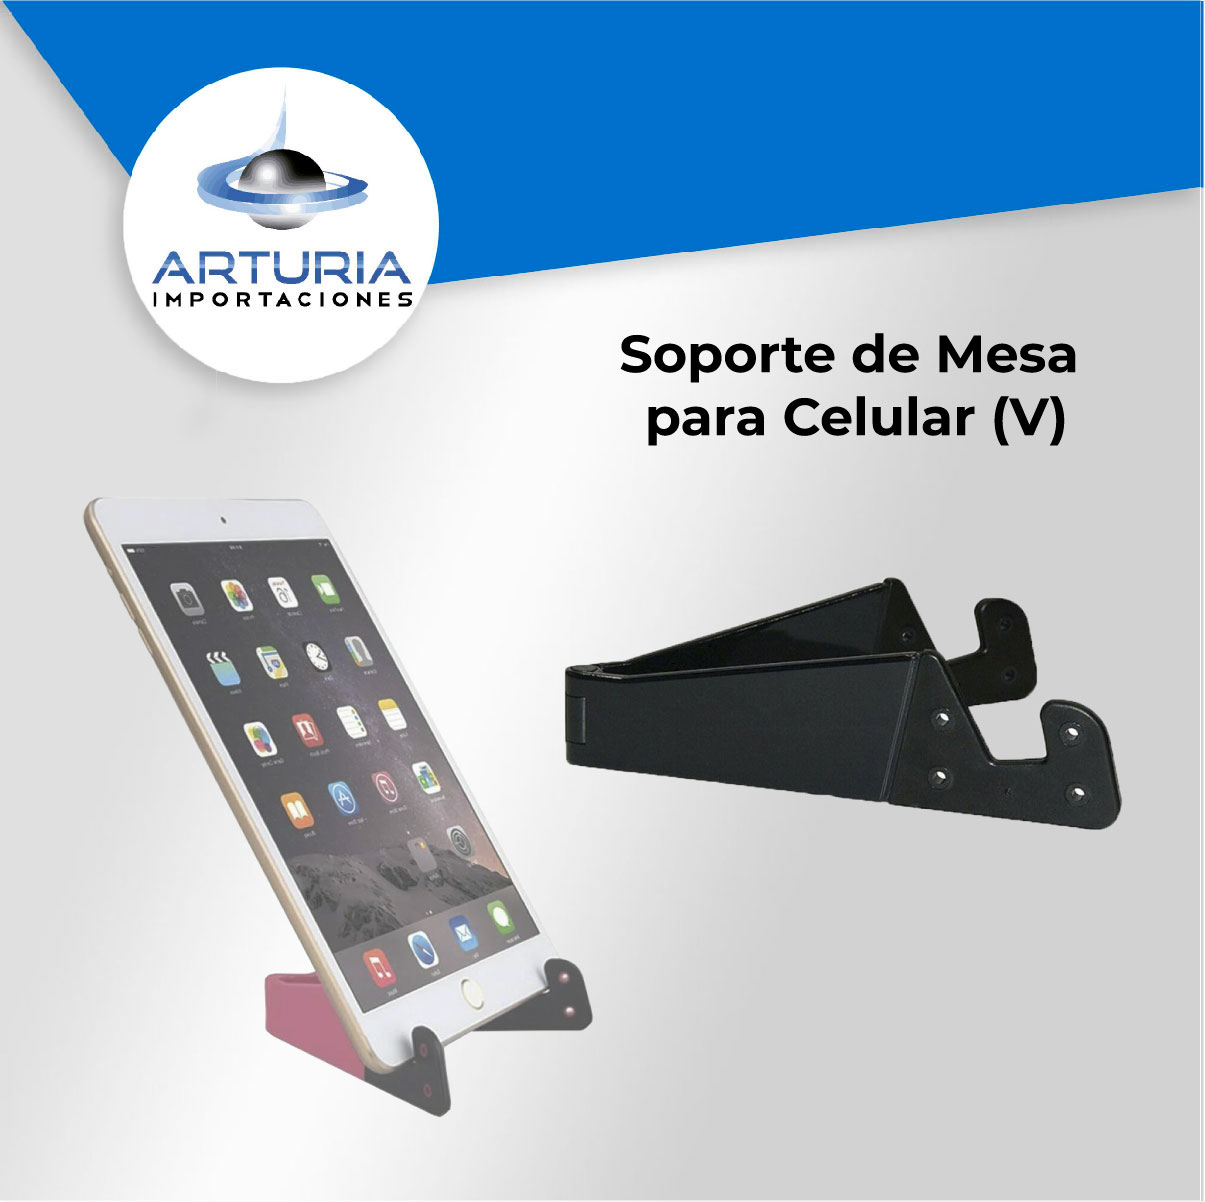 Soporte de Mesa para Celular y Tablet (V) - Importaciones Arturia